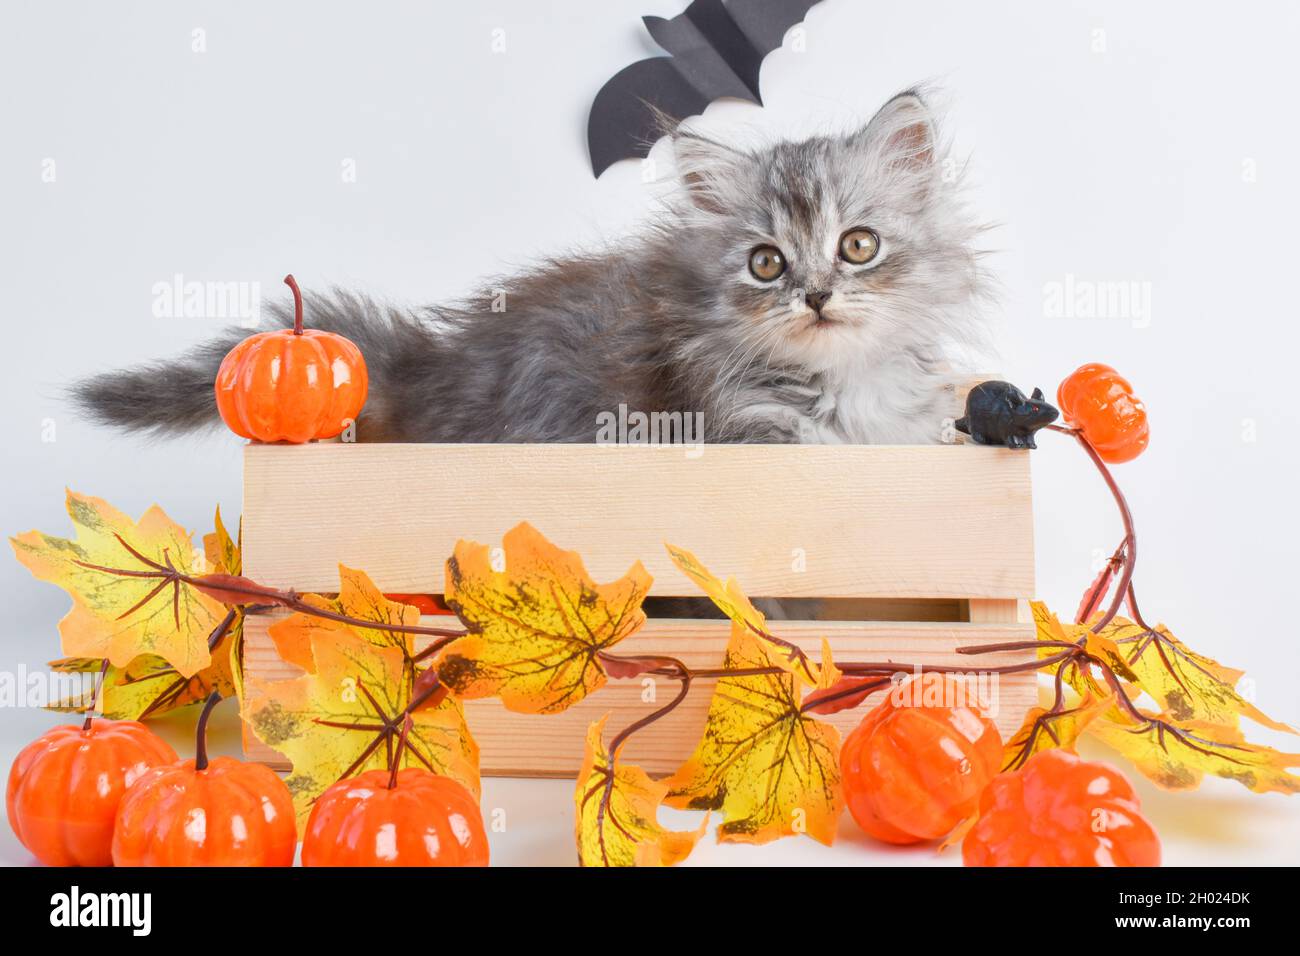 Ein niedliches Kätzchen mit Zunge sitzt in einer Holzkiste neben Kürbissen. Frohe Halloween. Stockfoto